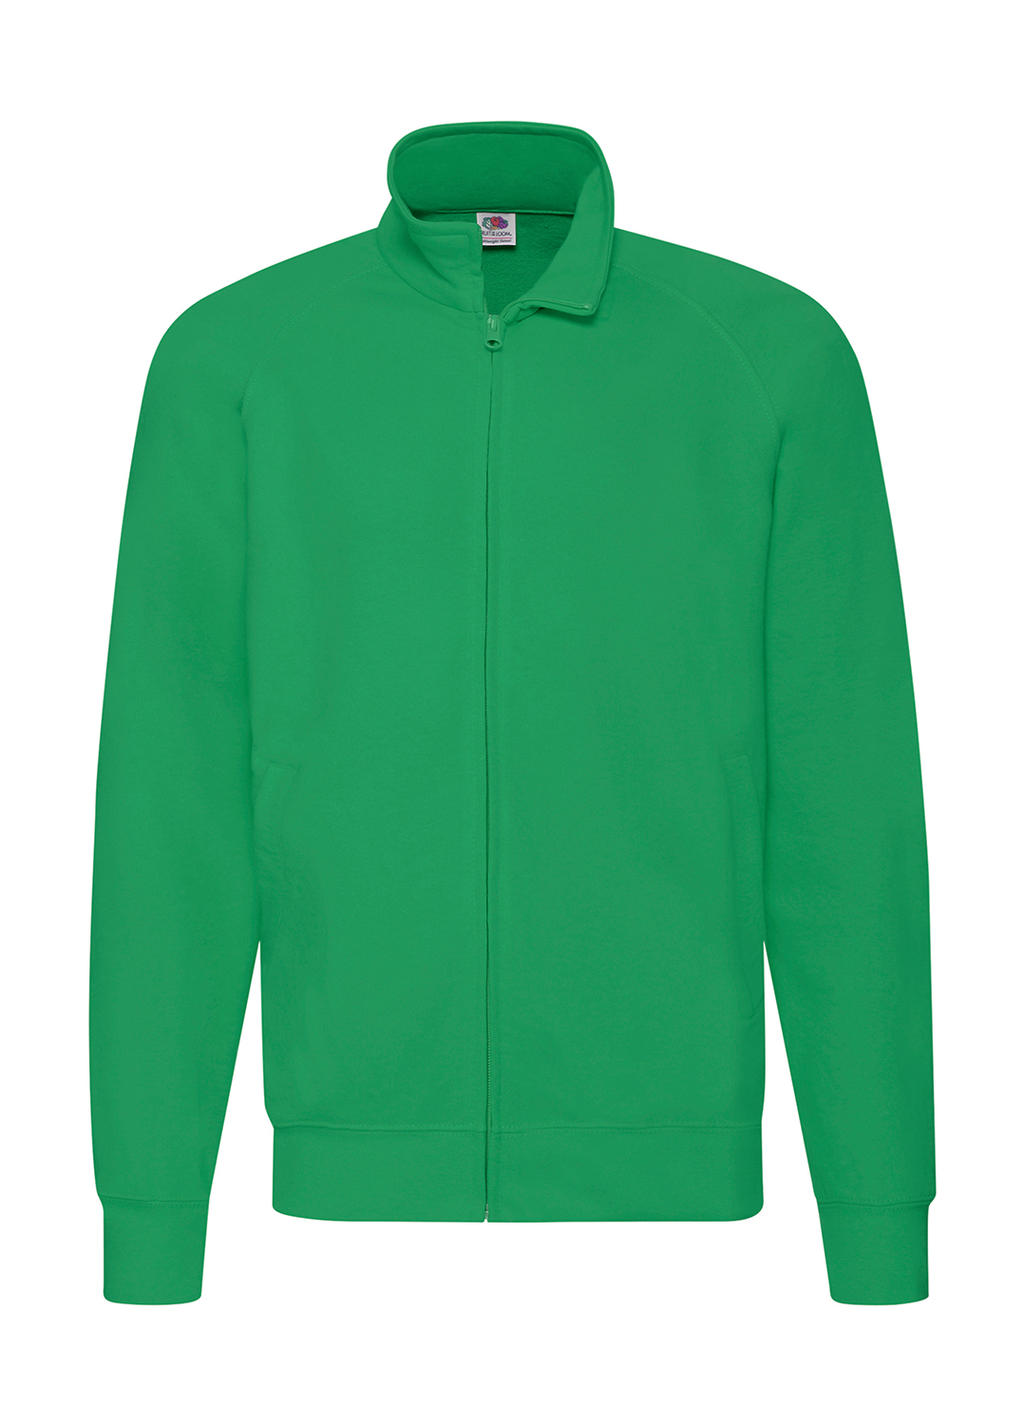  Lightweight Sweat Jacket in Farbe Kelly Green